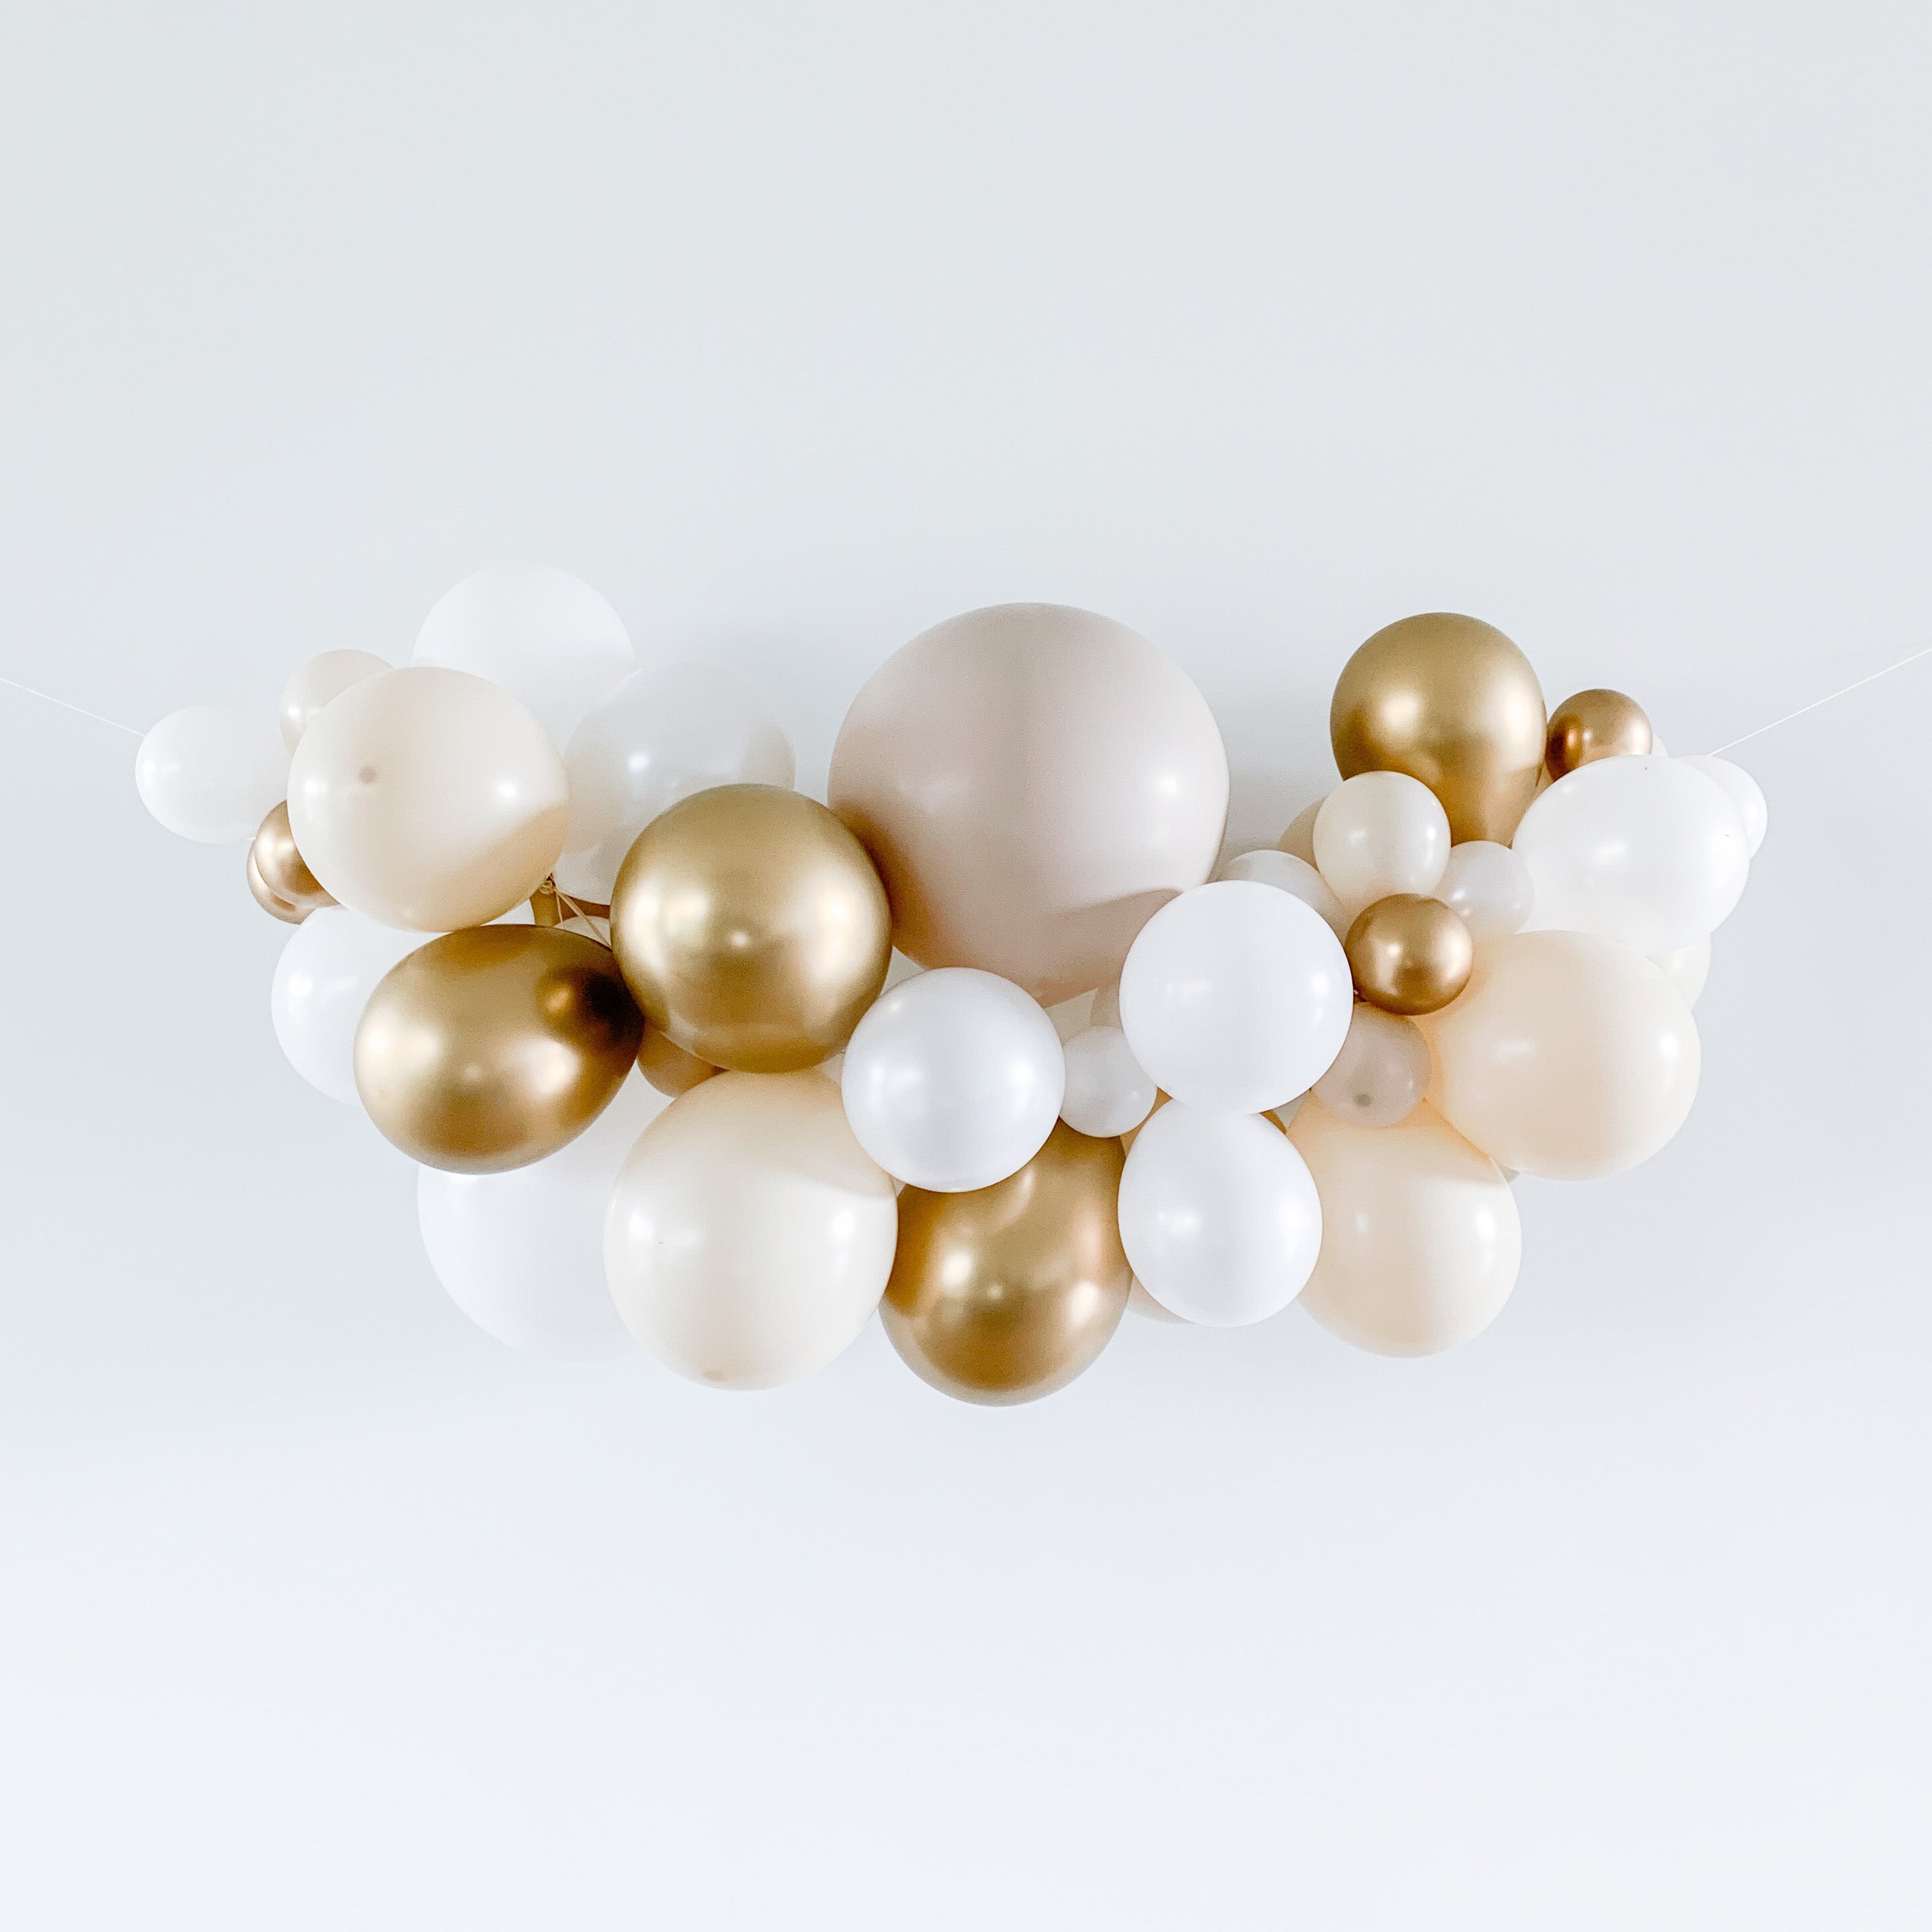 Ballonslinger ballonnenboog zand beige nude goud wit als feestdecoratie